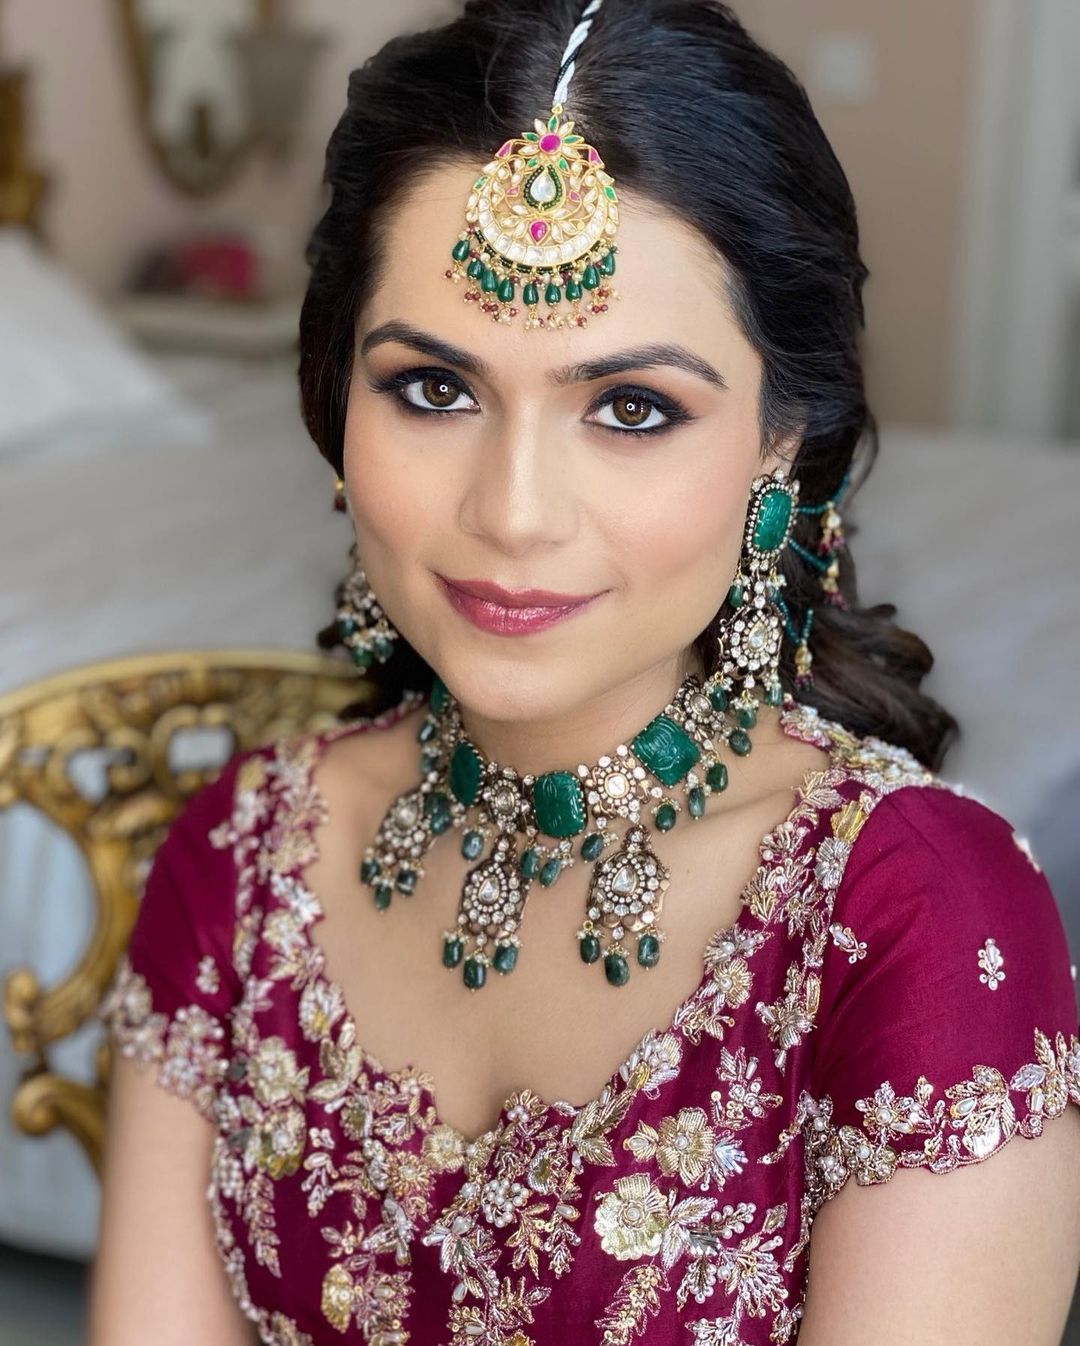 Sejal kukreja's wedding makeup